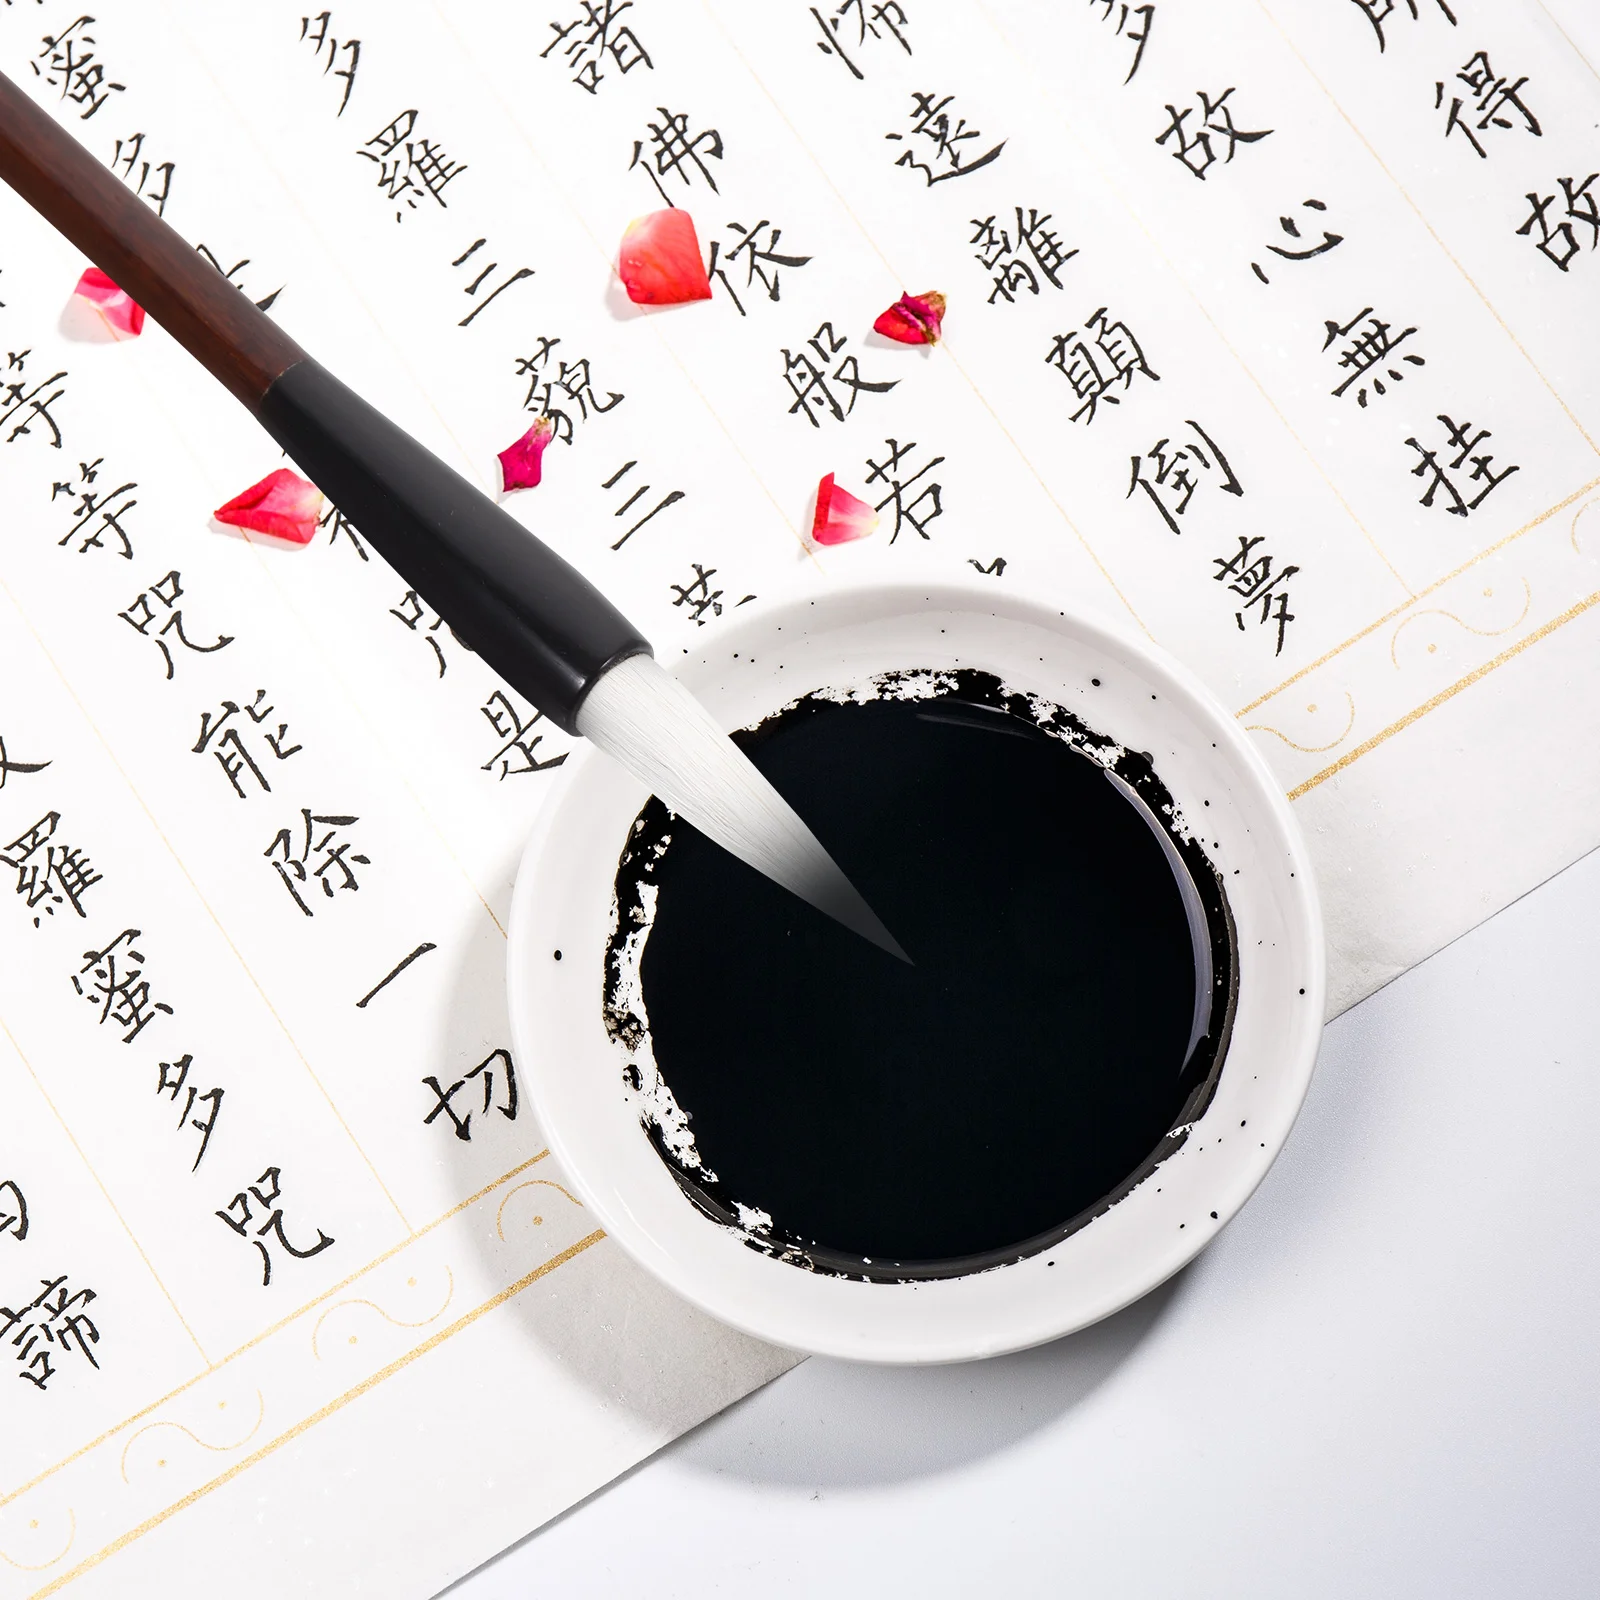 3pcs Китайска калиграфия писане четка рисуване живопис четка японски калиграфия писалка за начинаещи живопис рисуване писалка